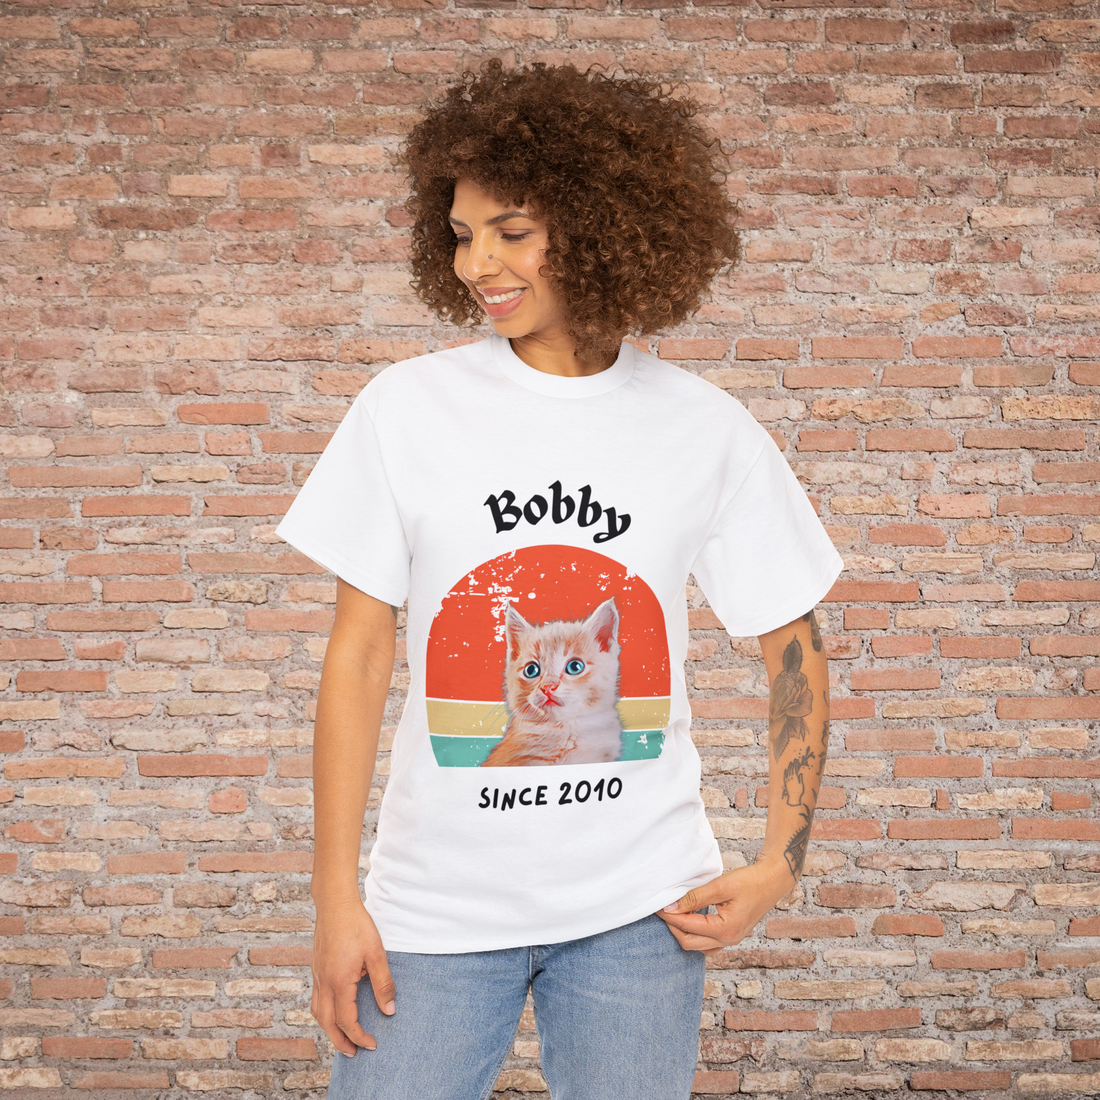 Customise Your Pet Photo Unisex T-shirt Retro Vintage Style, Dog Lover Shirt, Cat Image Custom Logo T Shirts, Personalised Tee Birthday Gift